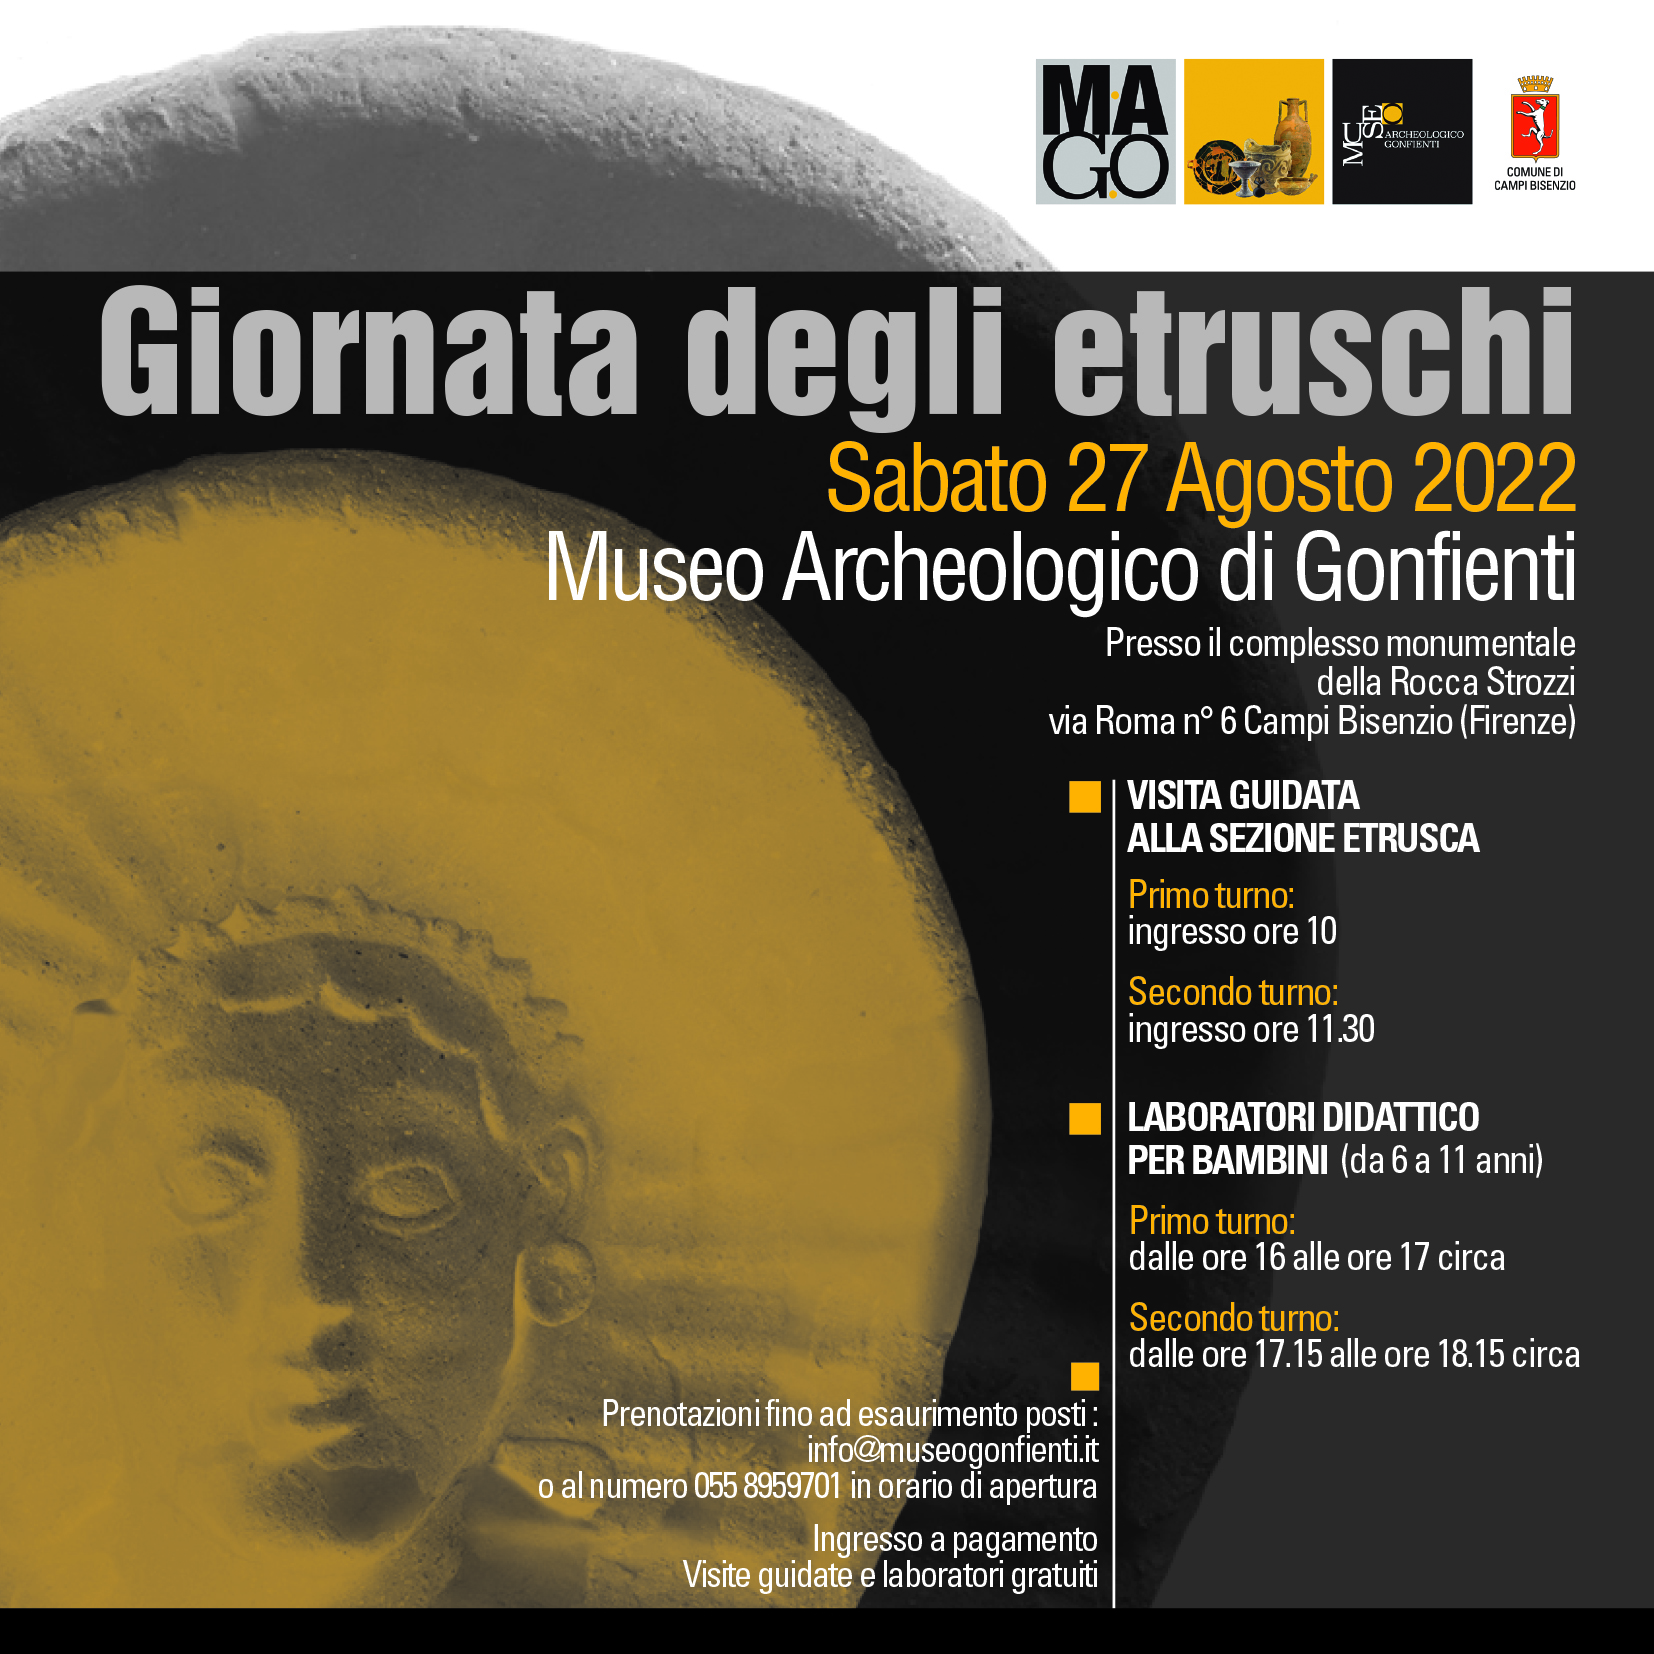 pubblicità giornata Etruschi - fonte Comune di Campi Bisenzio